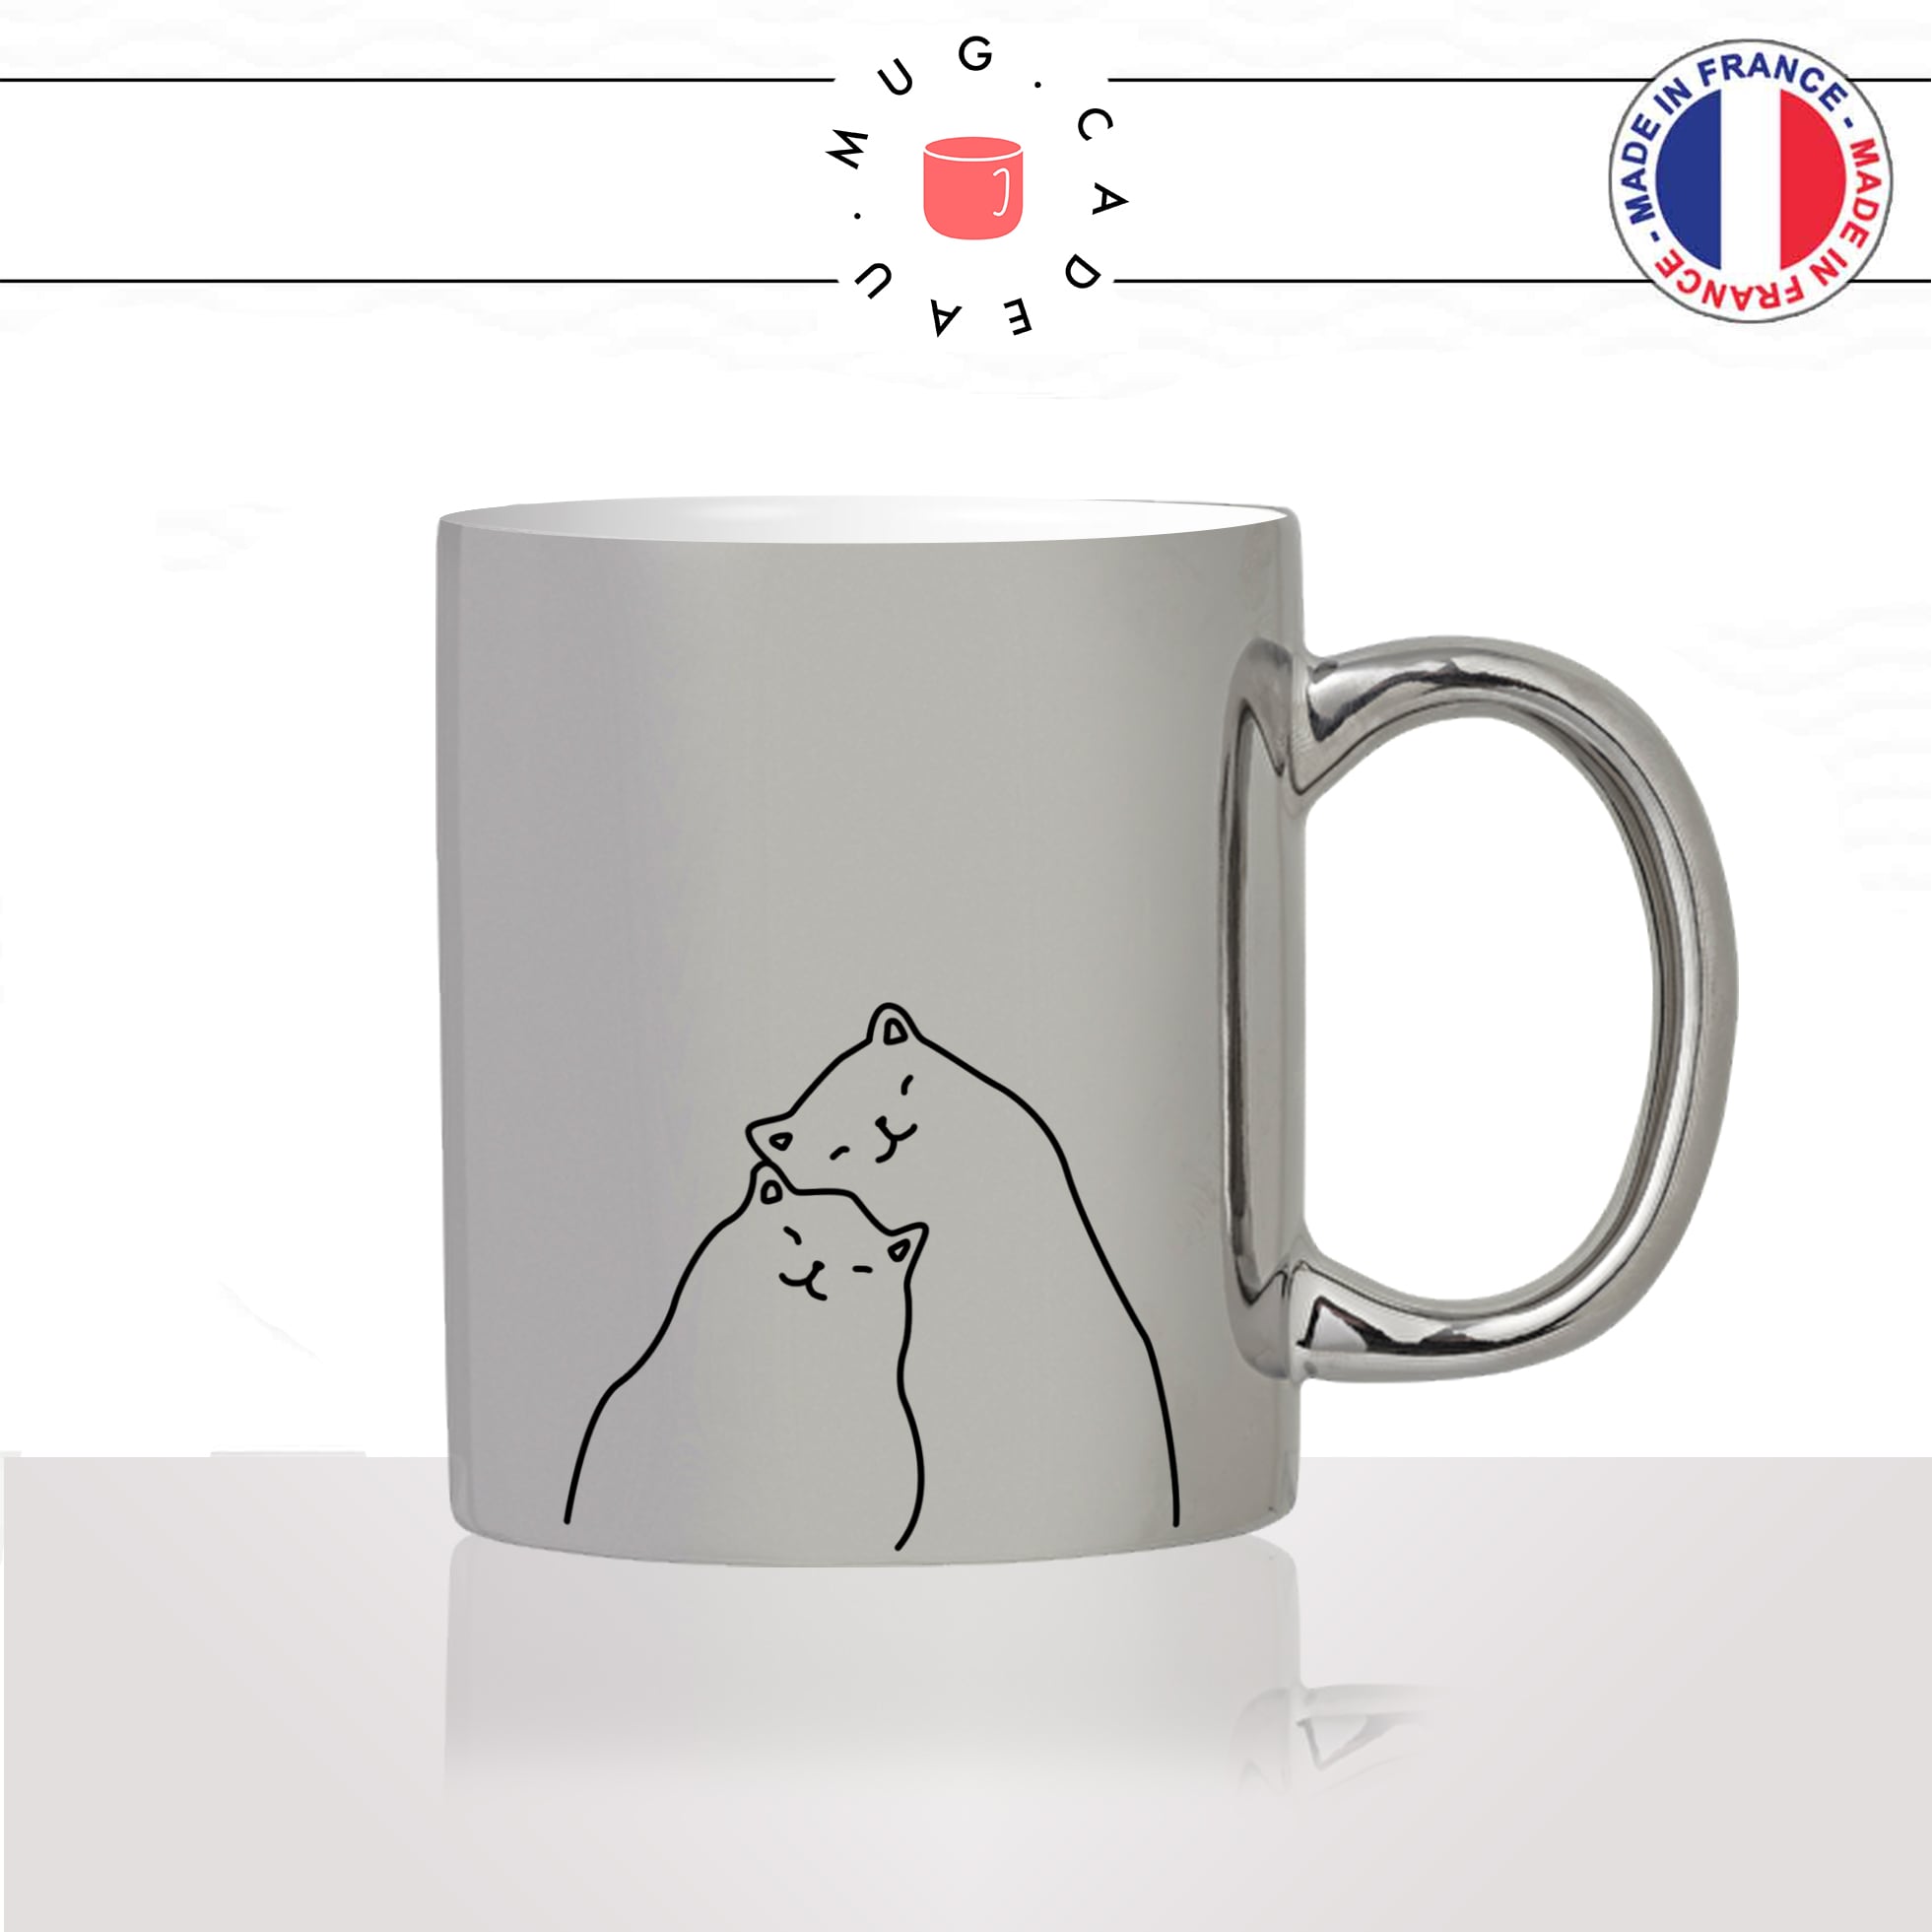 mug-tasse-argenté-silver-amoureux-couple-amour-chats-mignon-animal-chaton-dessin-noir-fun-café-thé-idée-cadeau-original-personnalisé2-min